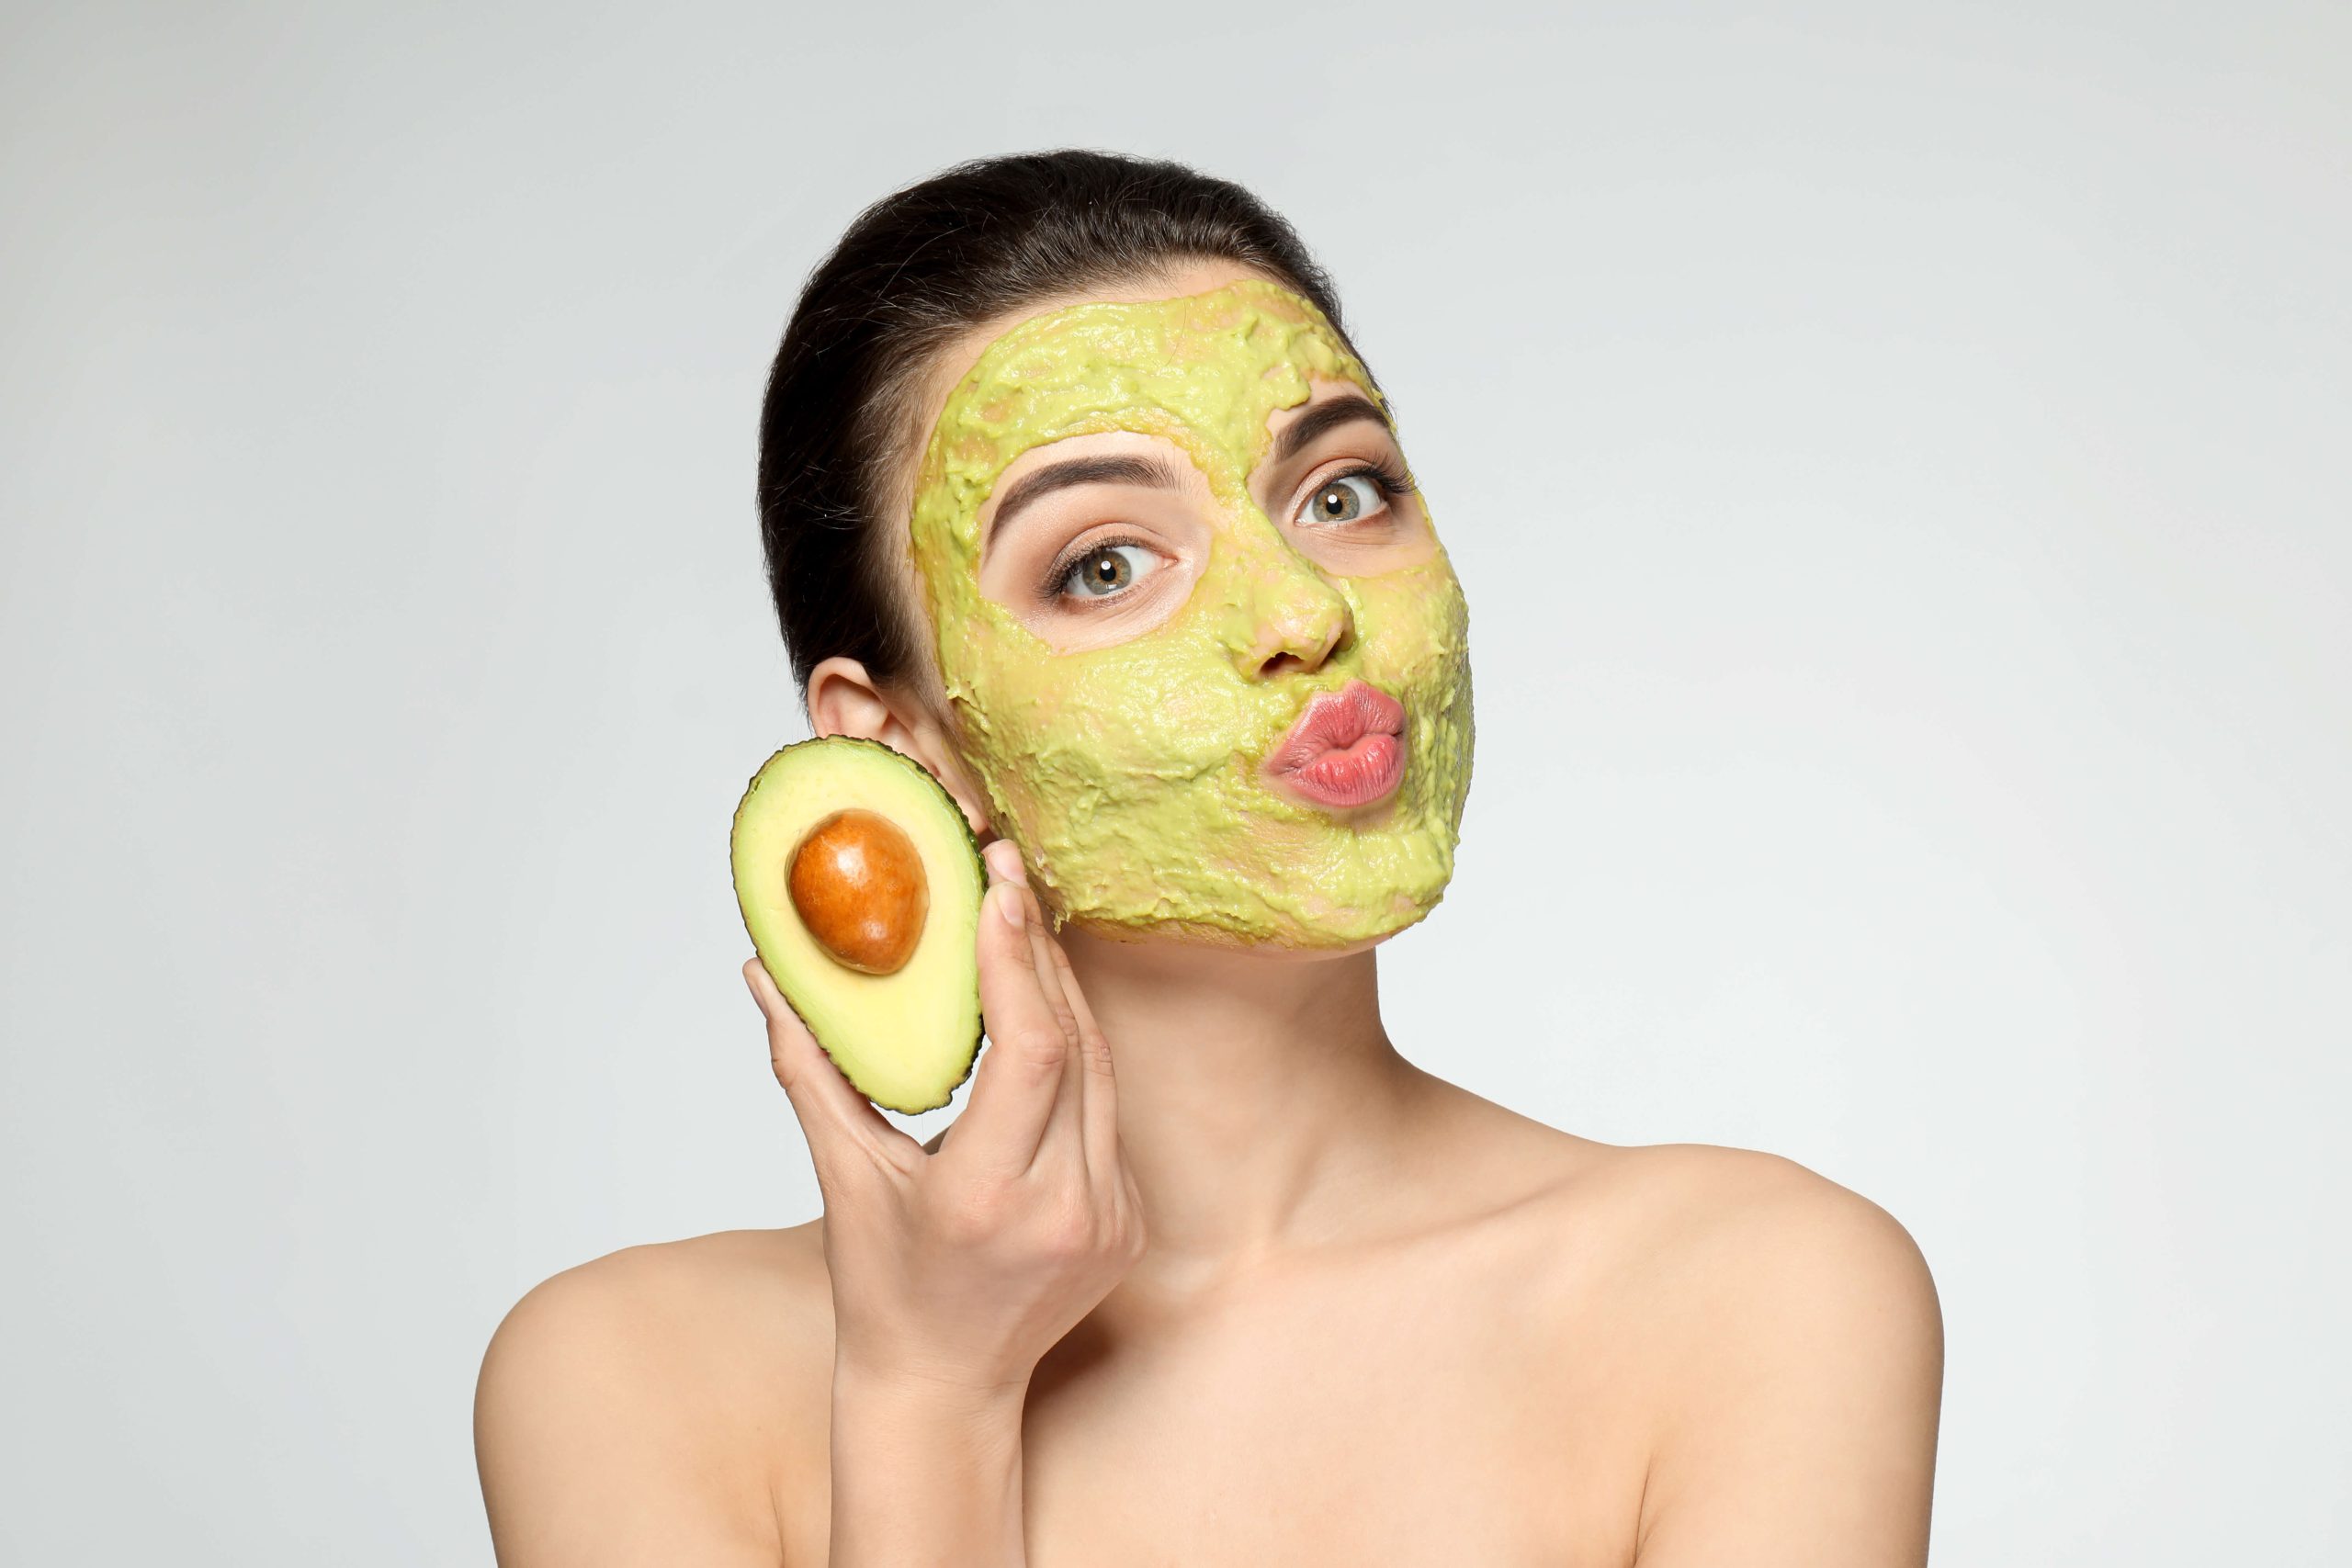 Увлажняющие маски для сухой кожи: домашние рецепты и магазинные средства